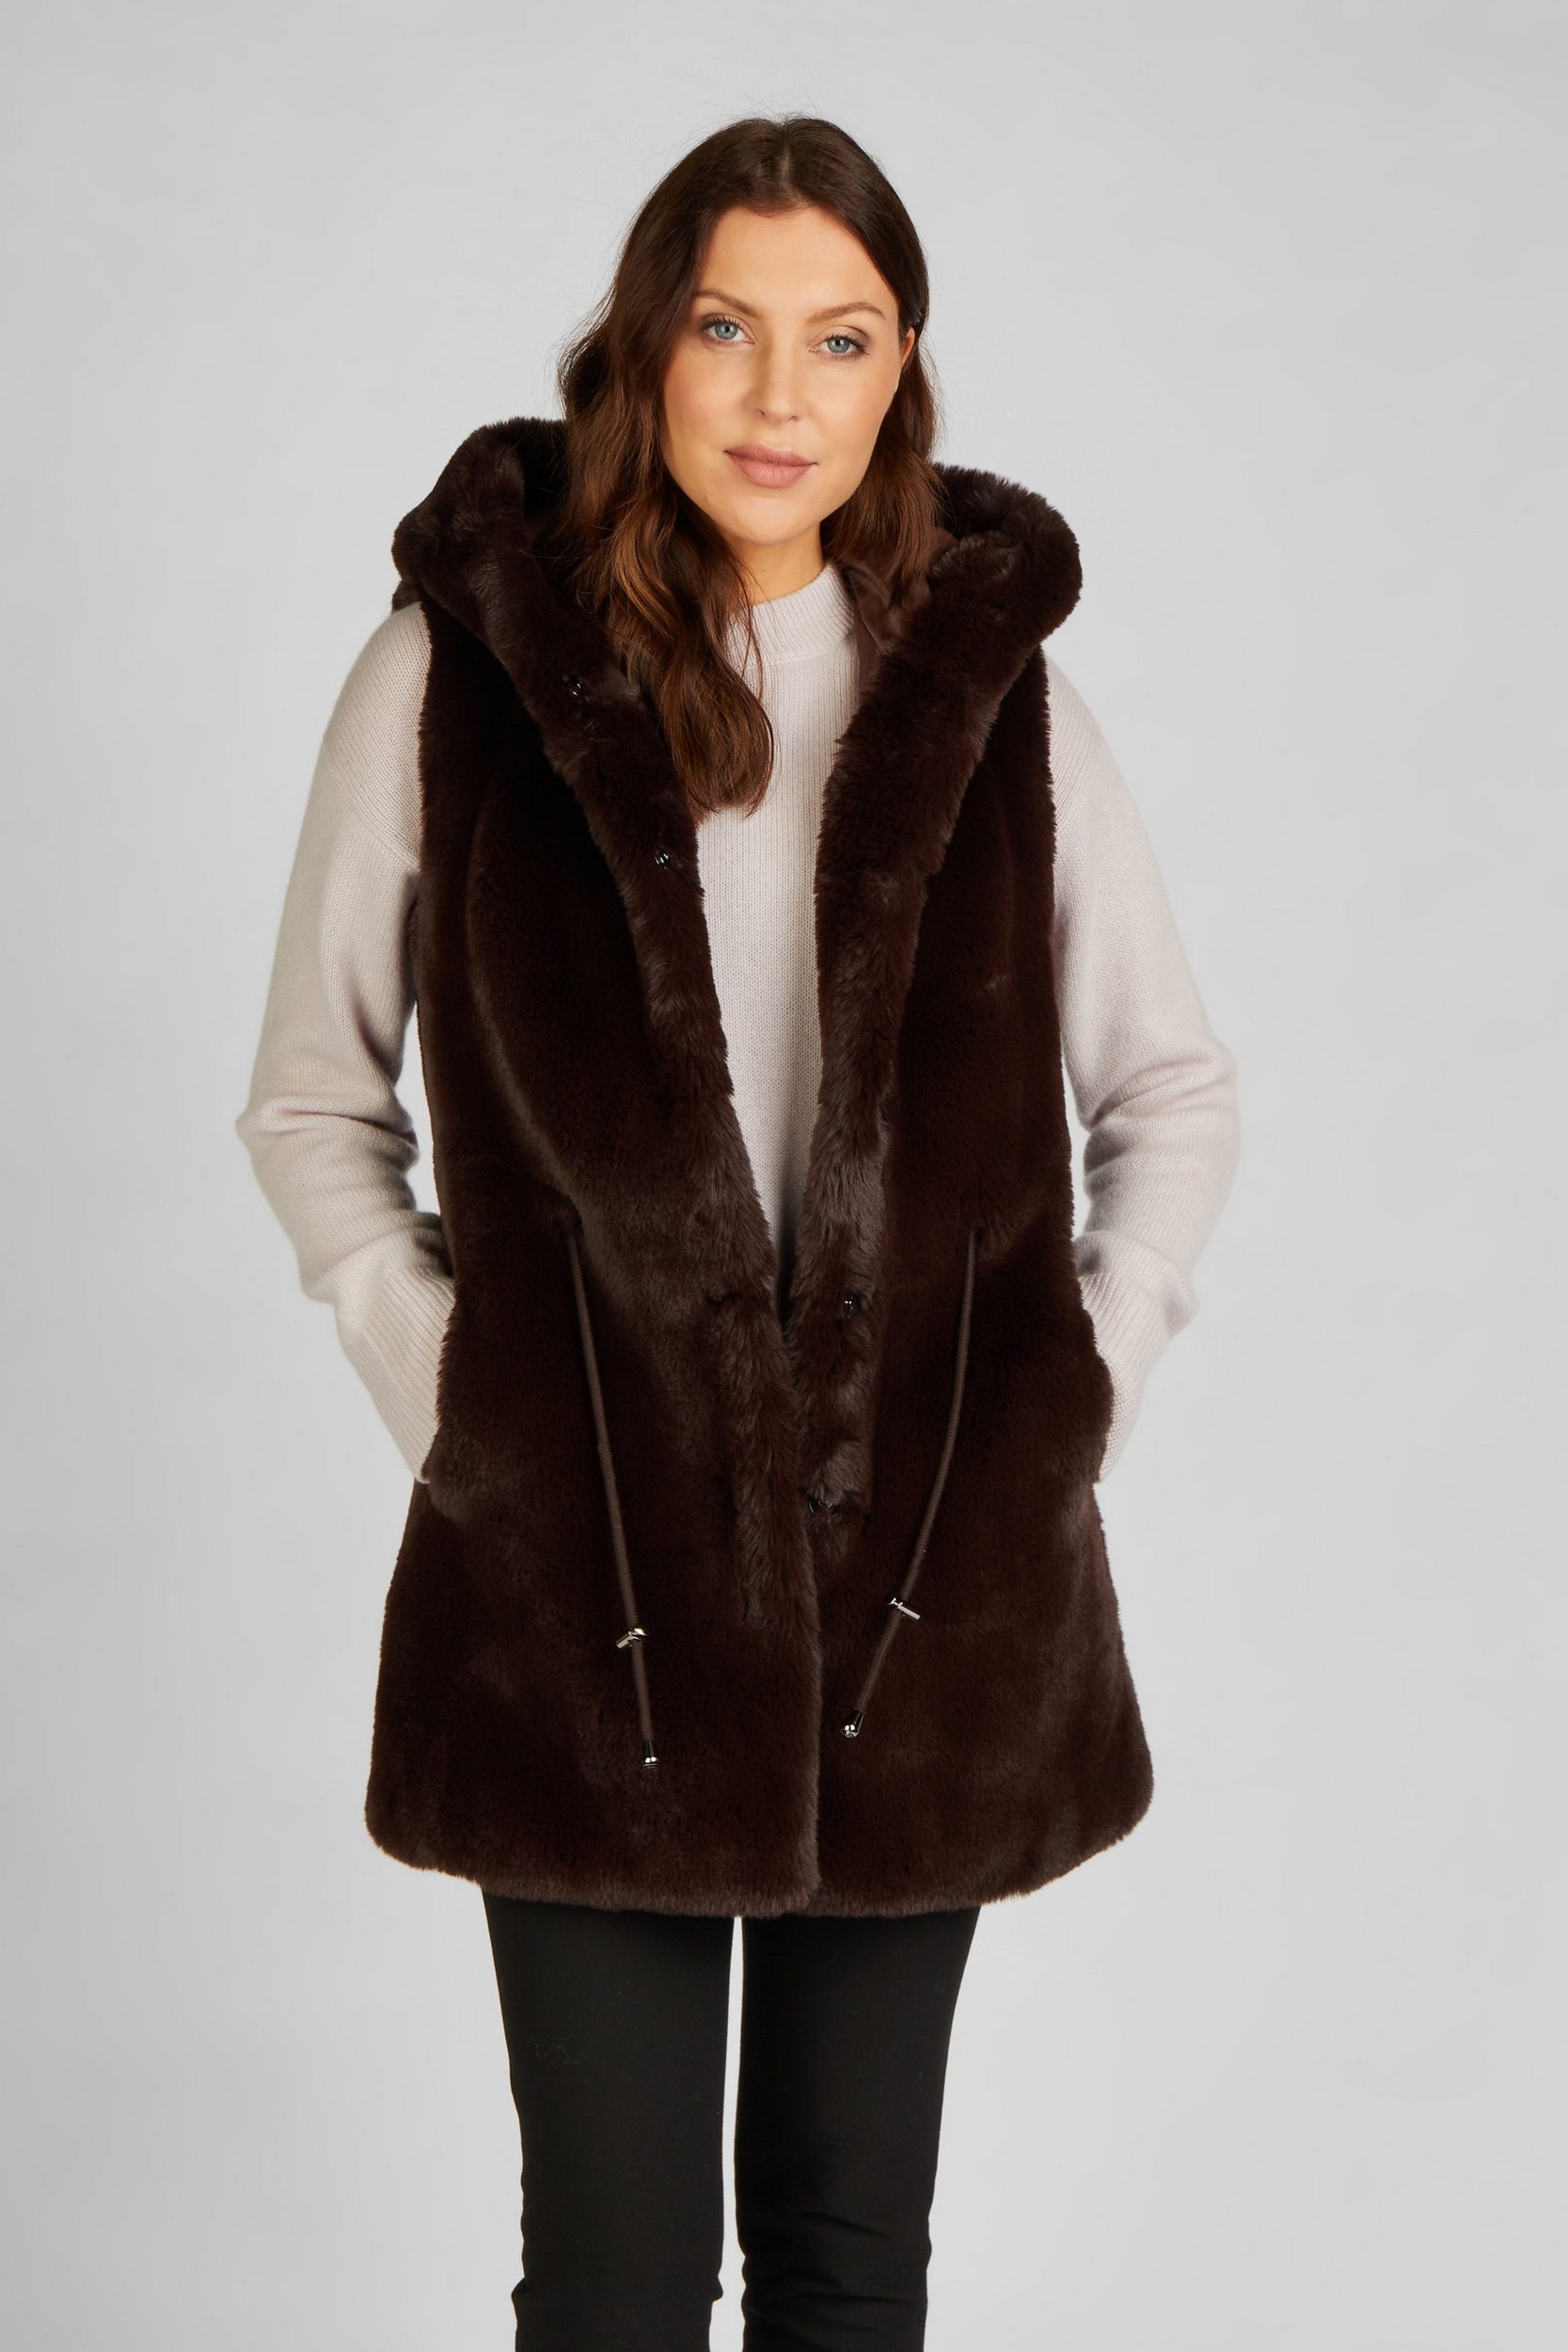 FUNK brown fake fur vest with hood